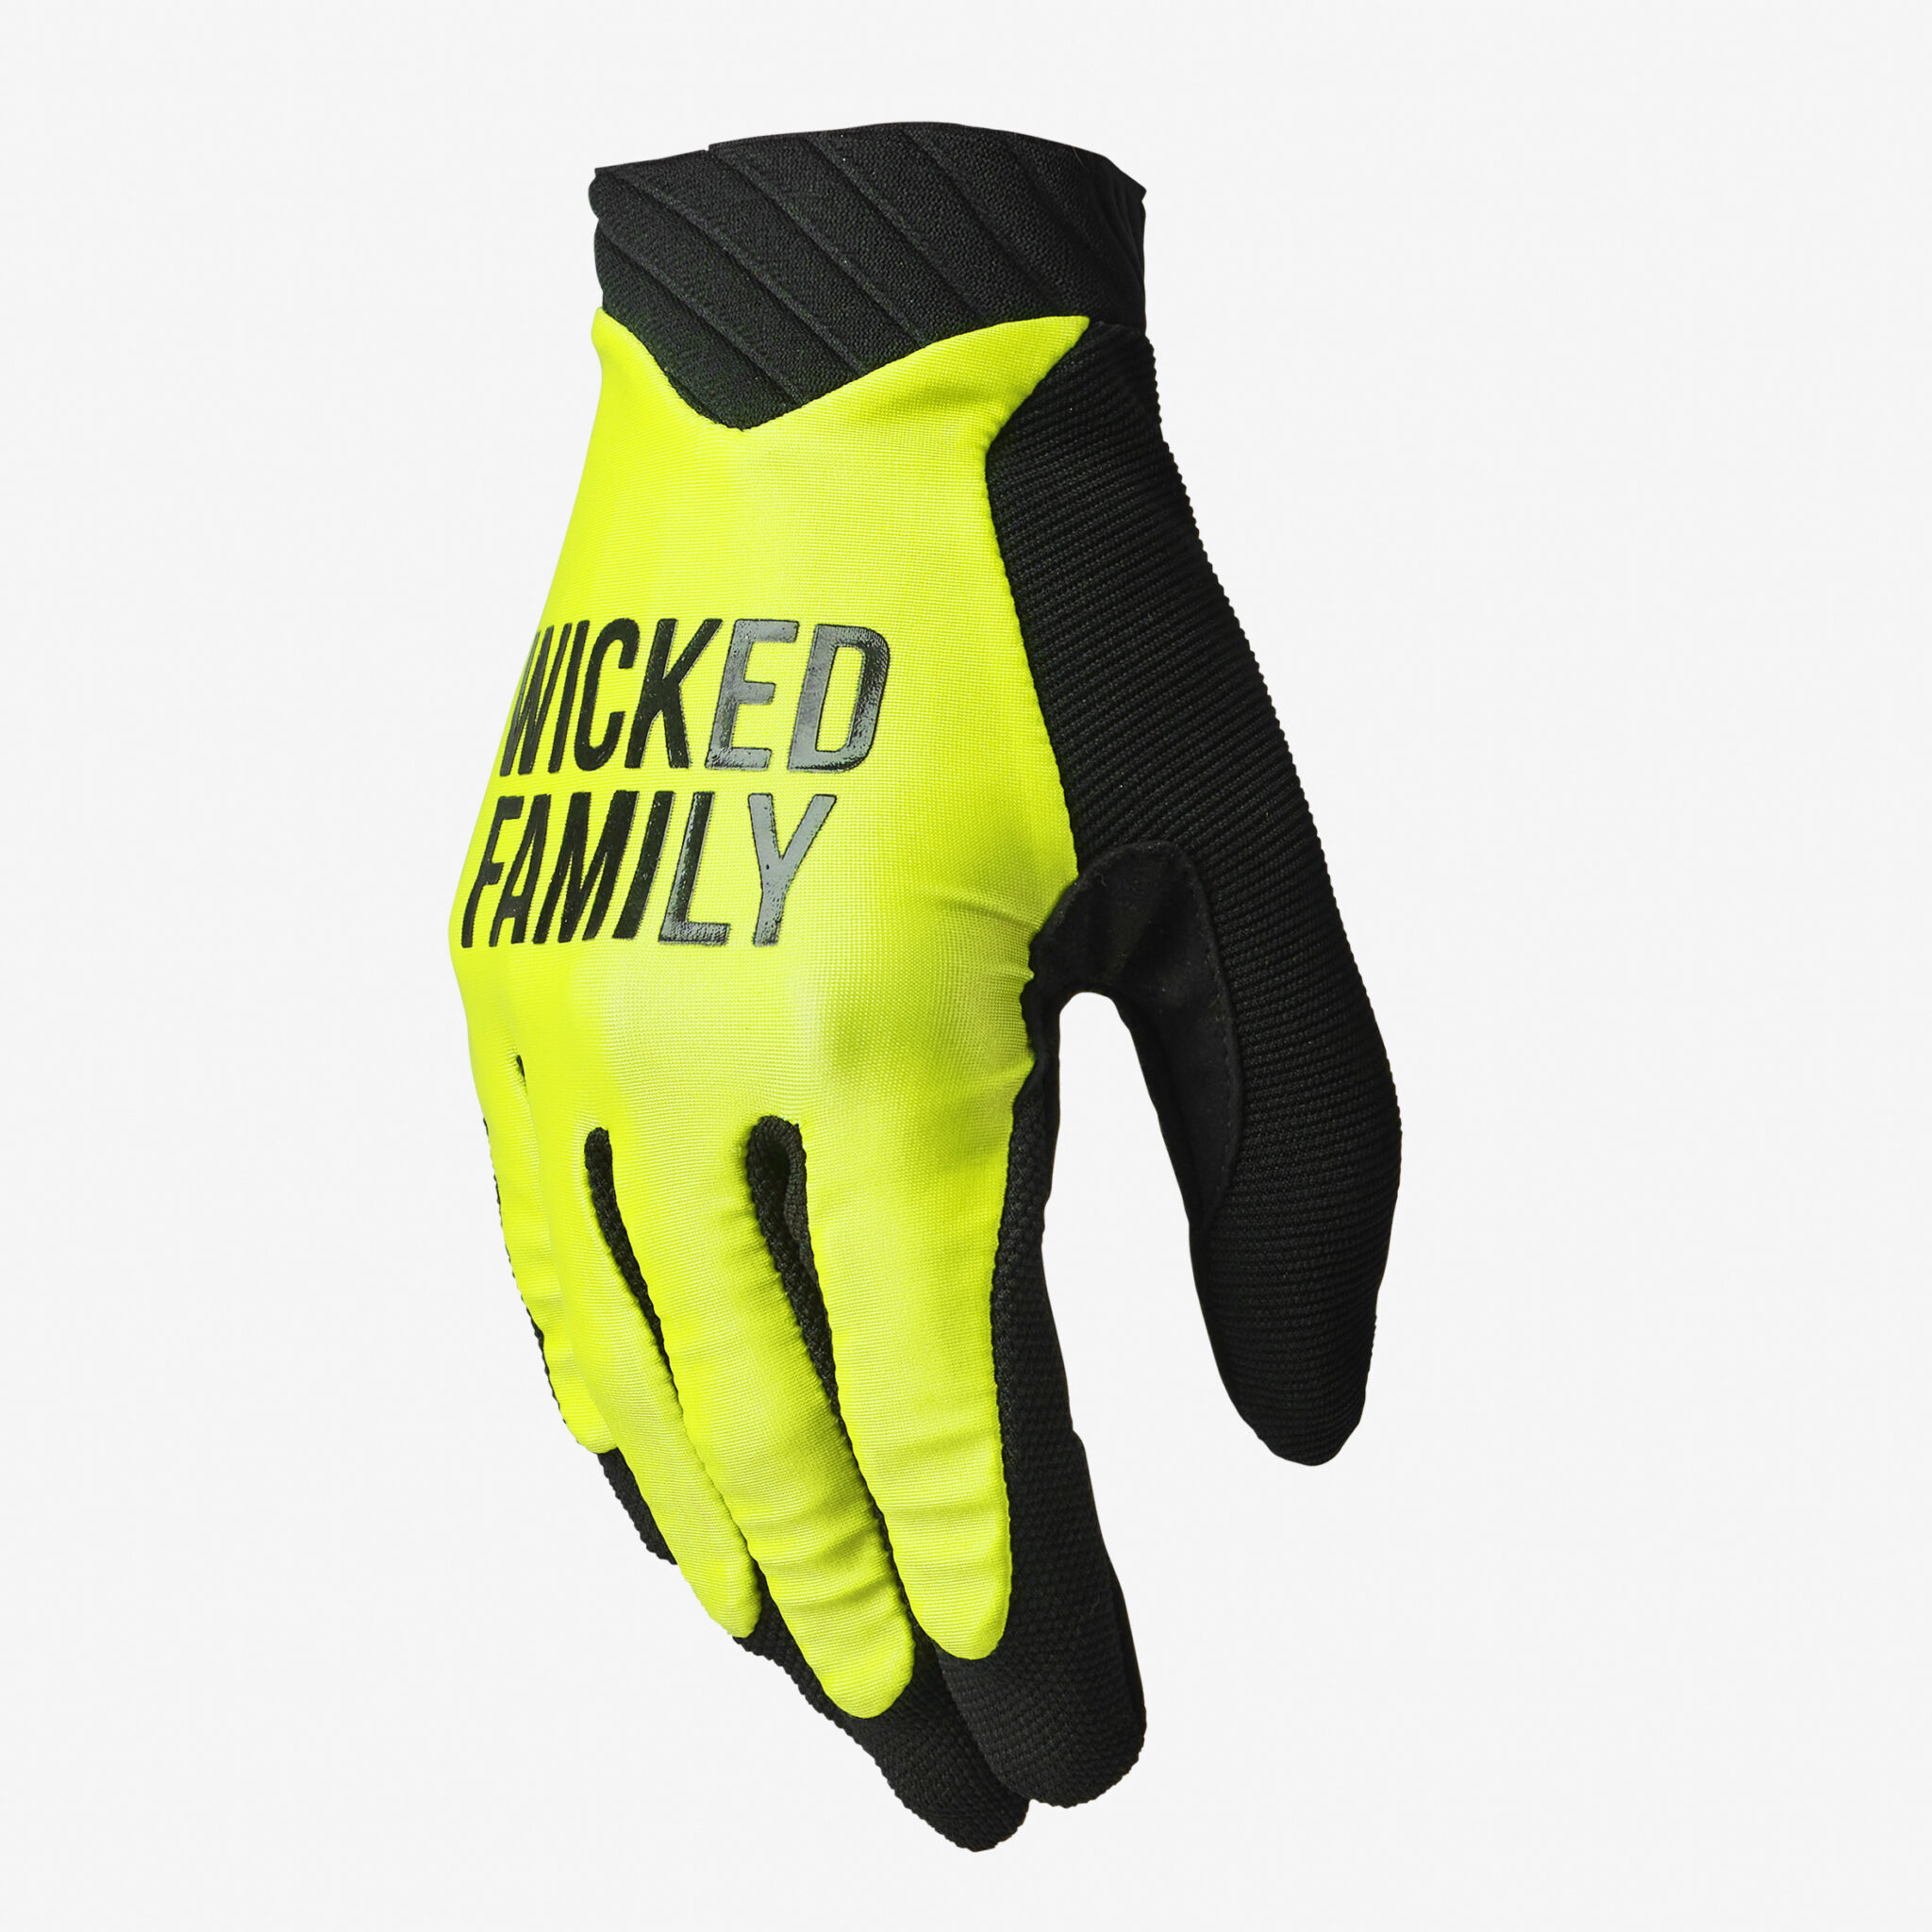 Motocross gloves & Dirtbike gloves - Wicked Family - MX gear